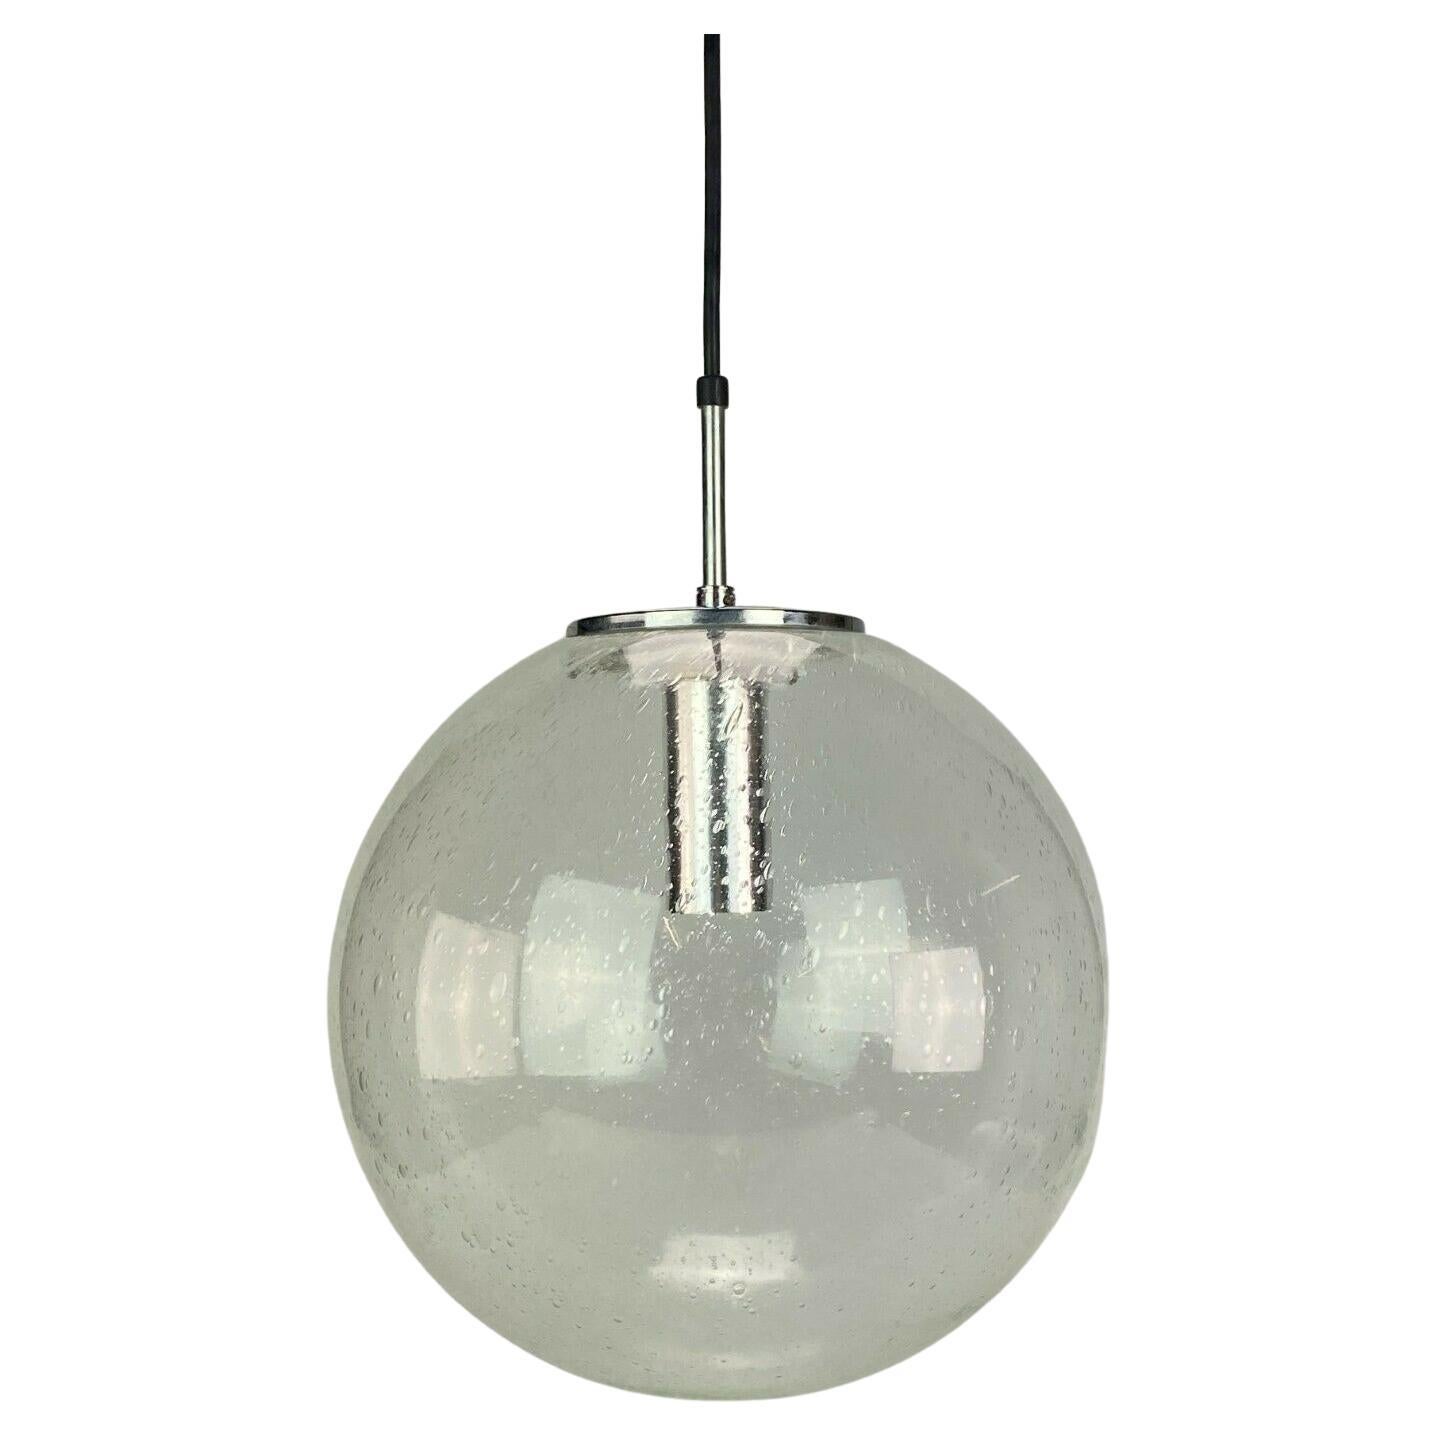 XL 60s 70s Lampe Deckenleuchte Limburg kugelförmige Lampe Kugel Design 